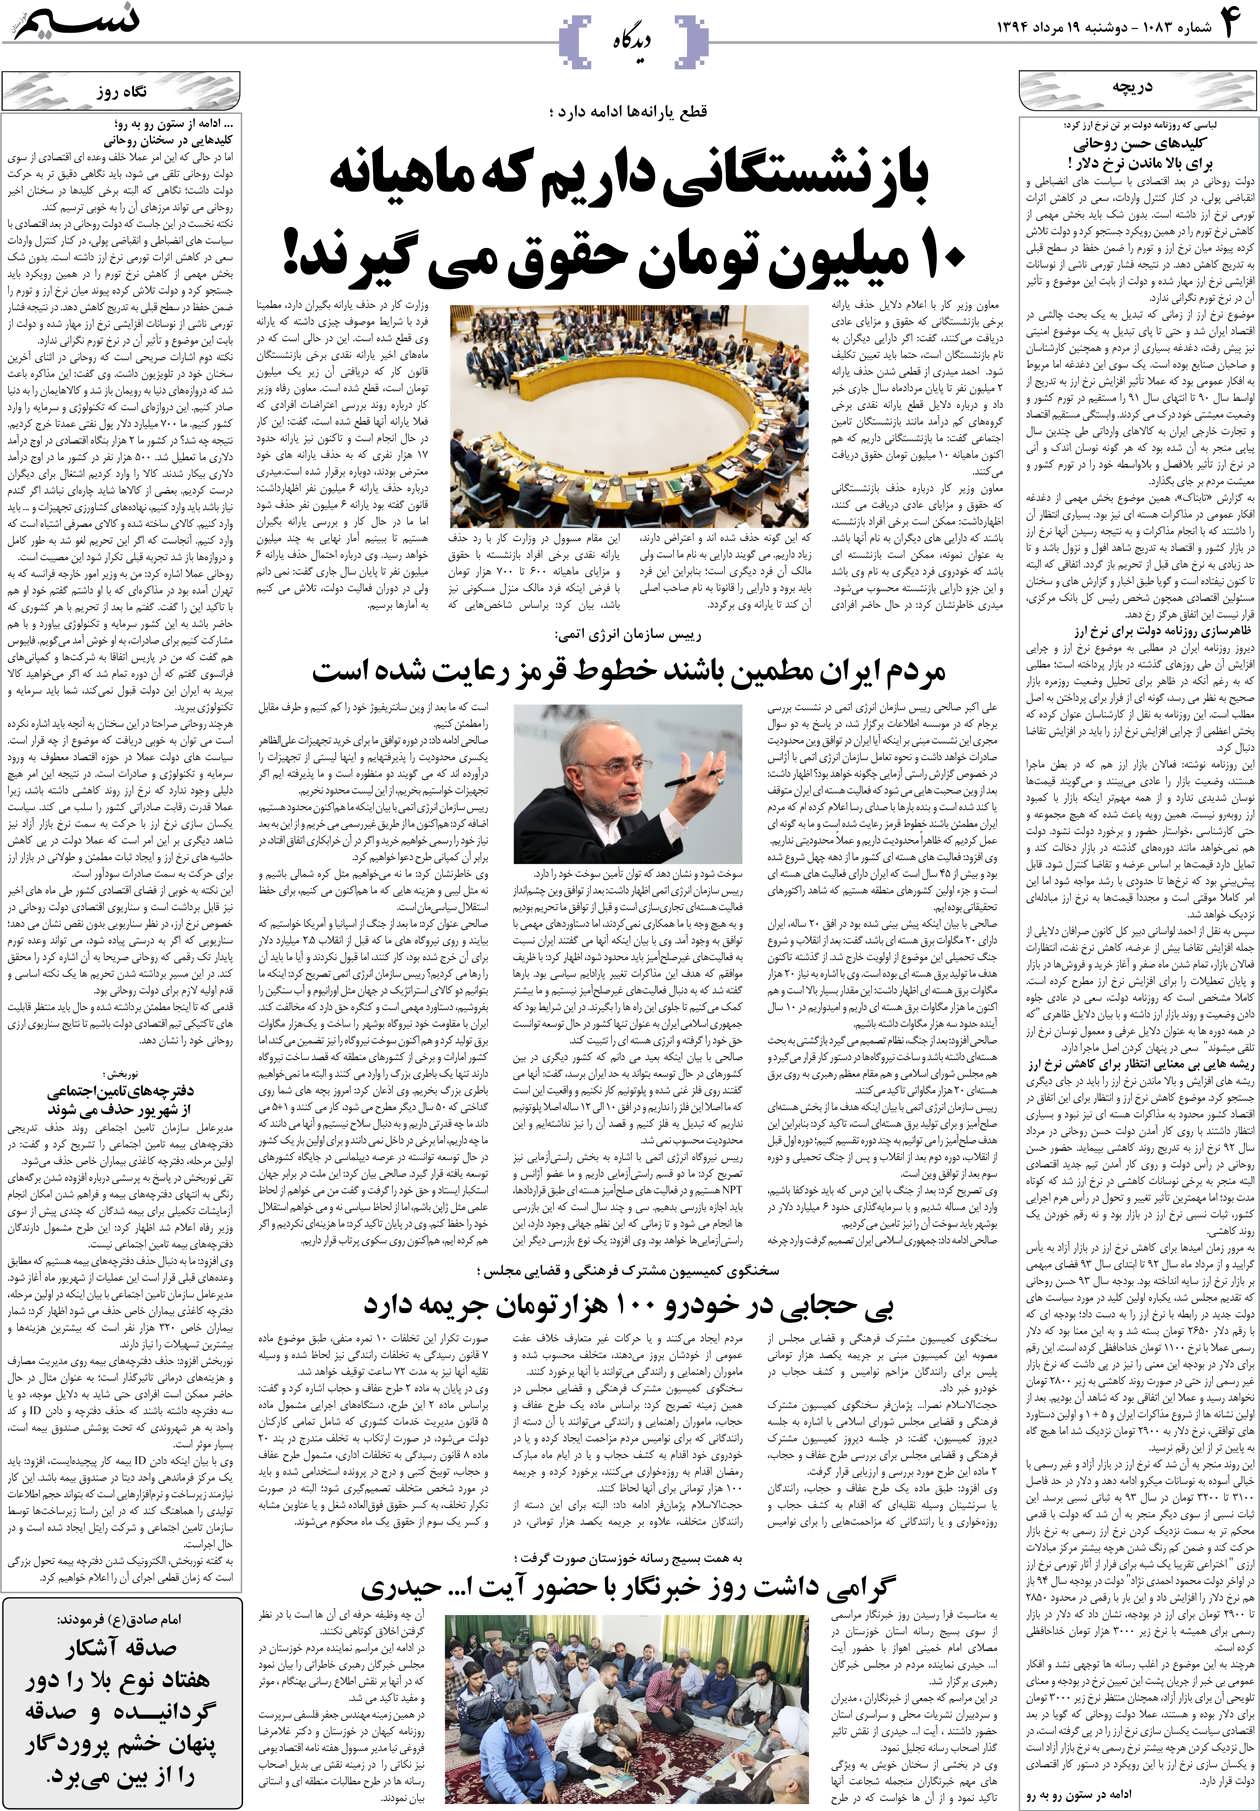 صفحه دیدگاه روزنامه نسیم شماره 1083